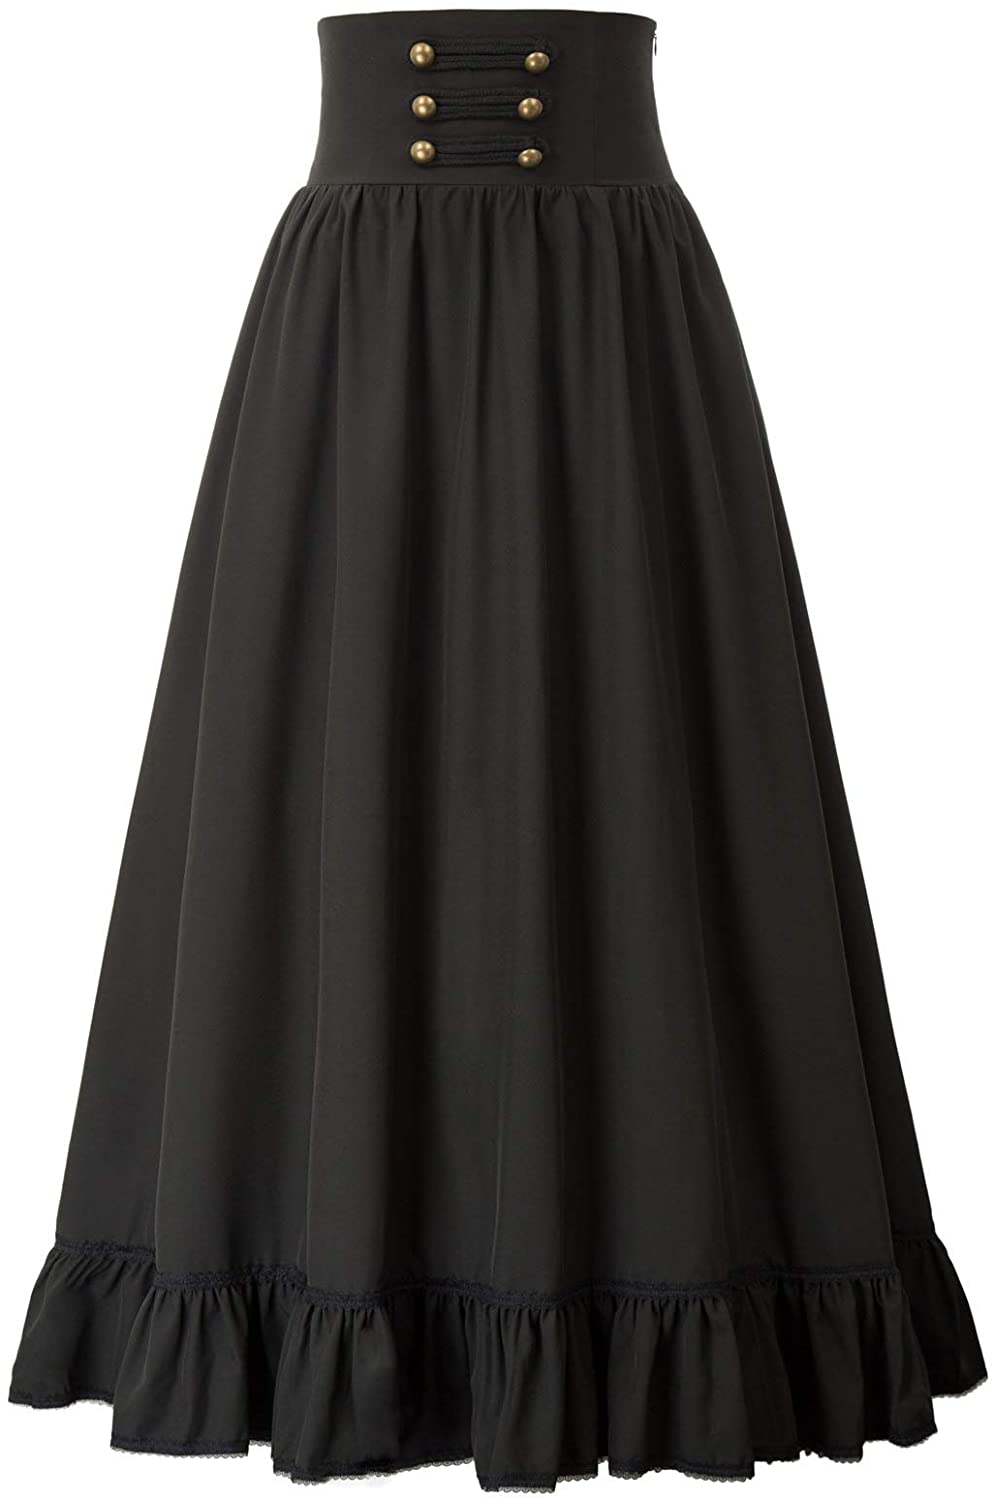 Scarlet Darkness Women Victorian Maxi Skirt Vintage High Waist A Line Skirt